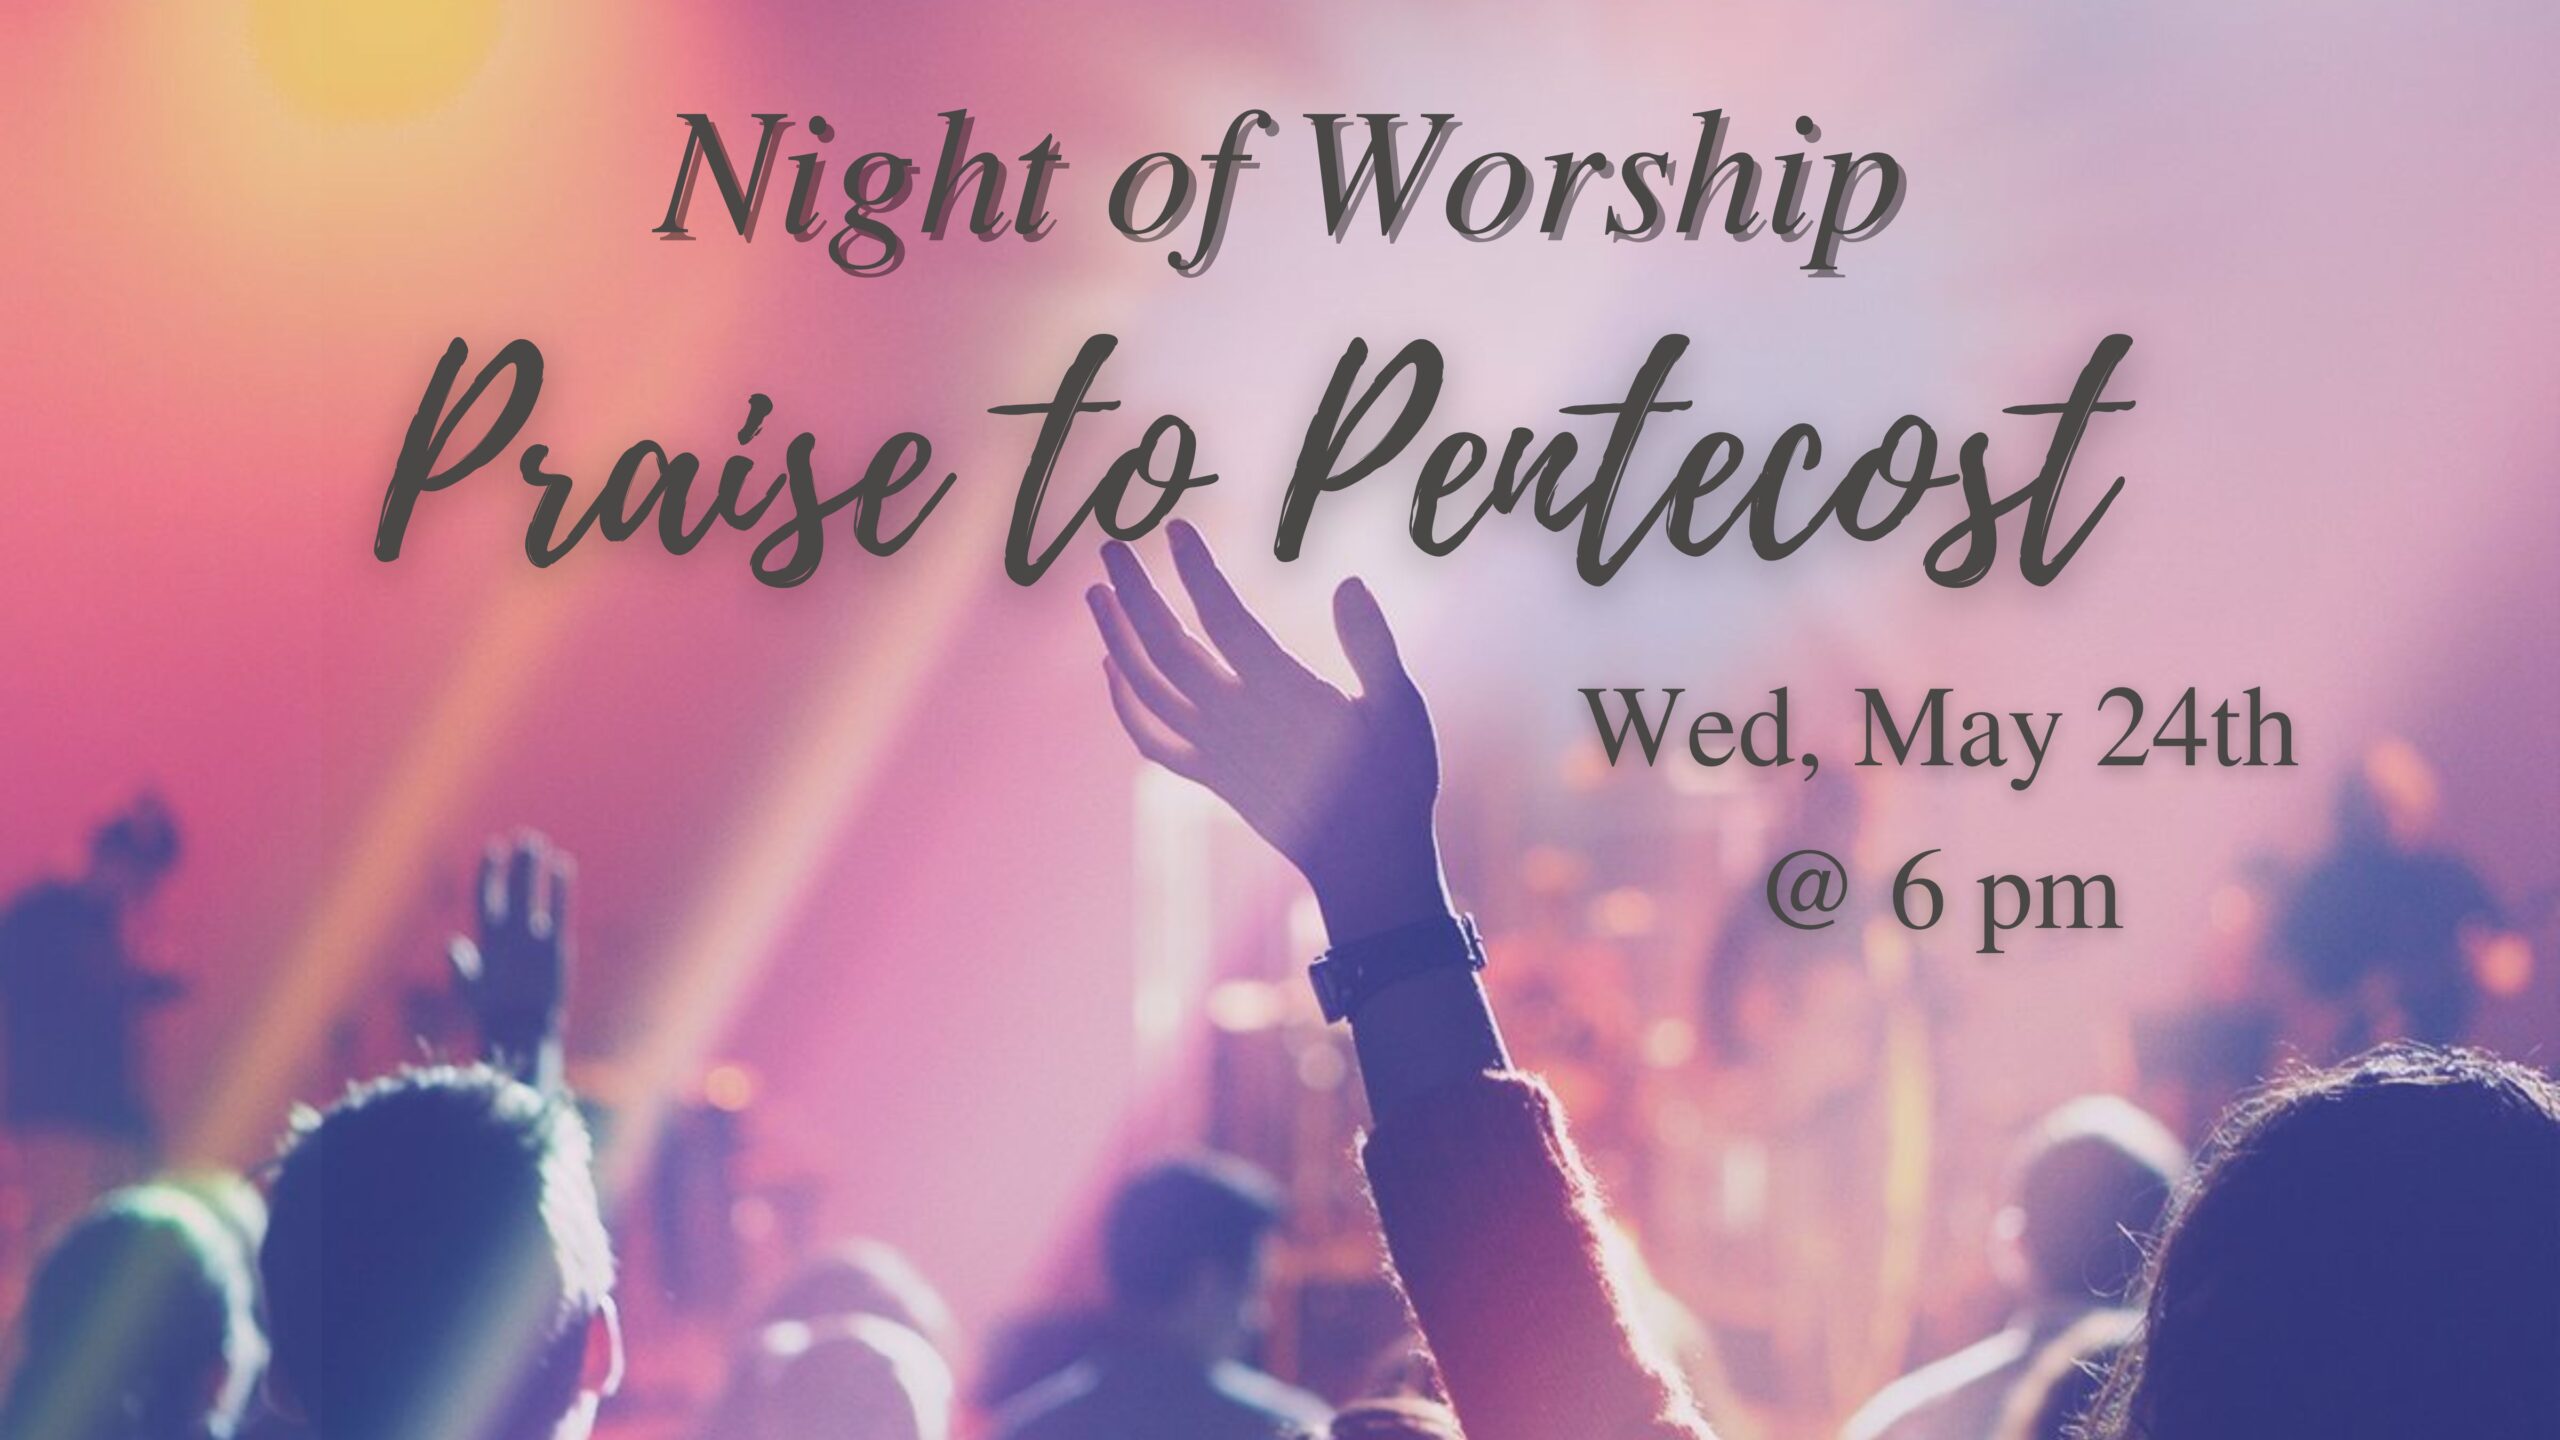 Praise to Pentecost – Night of Worship